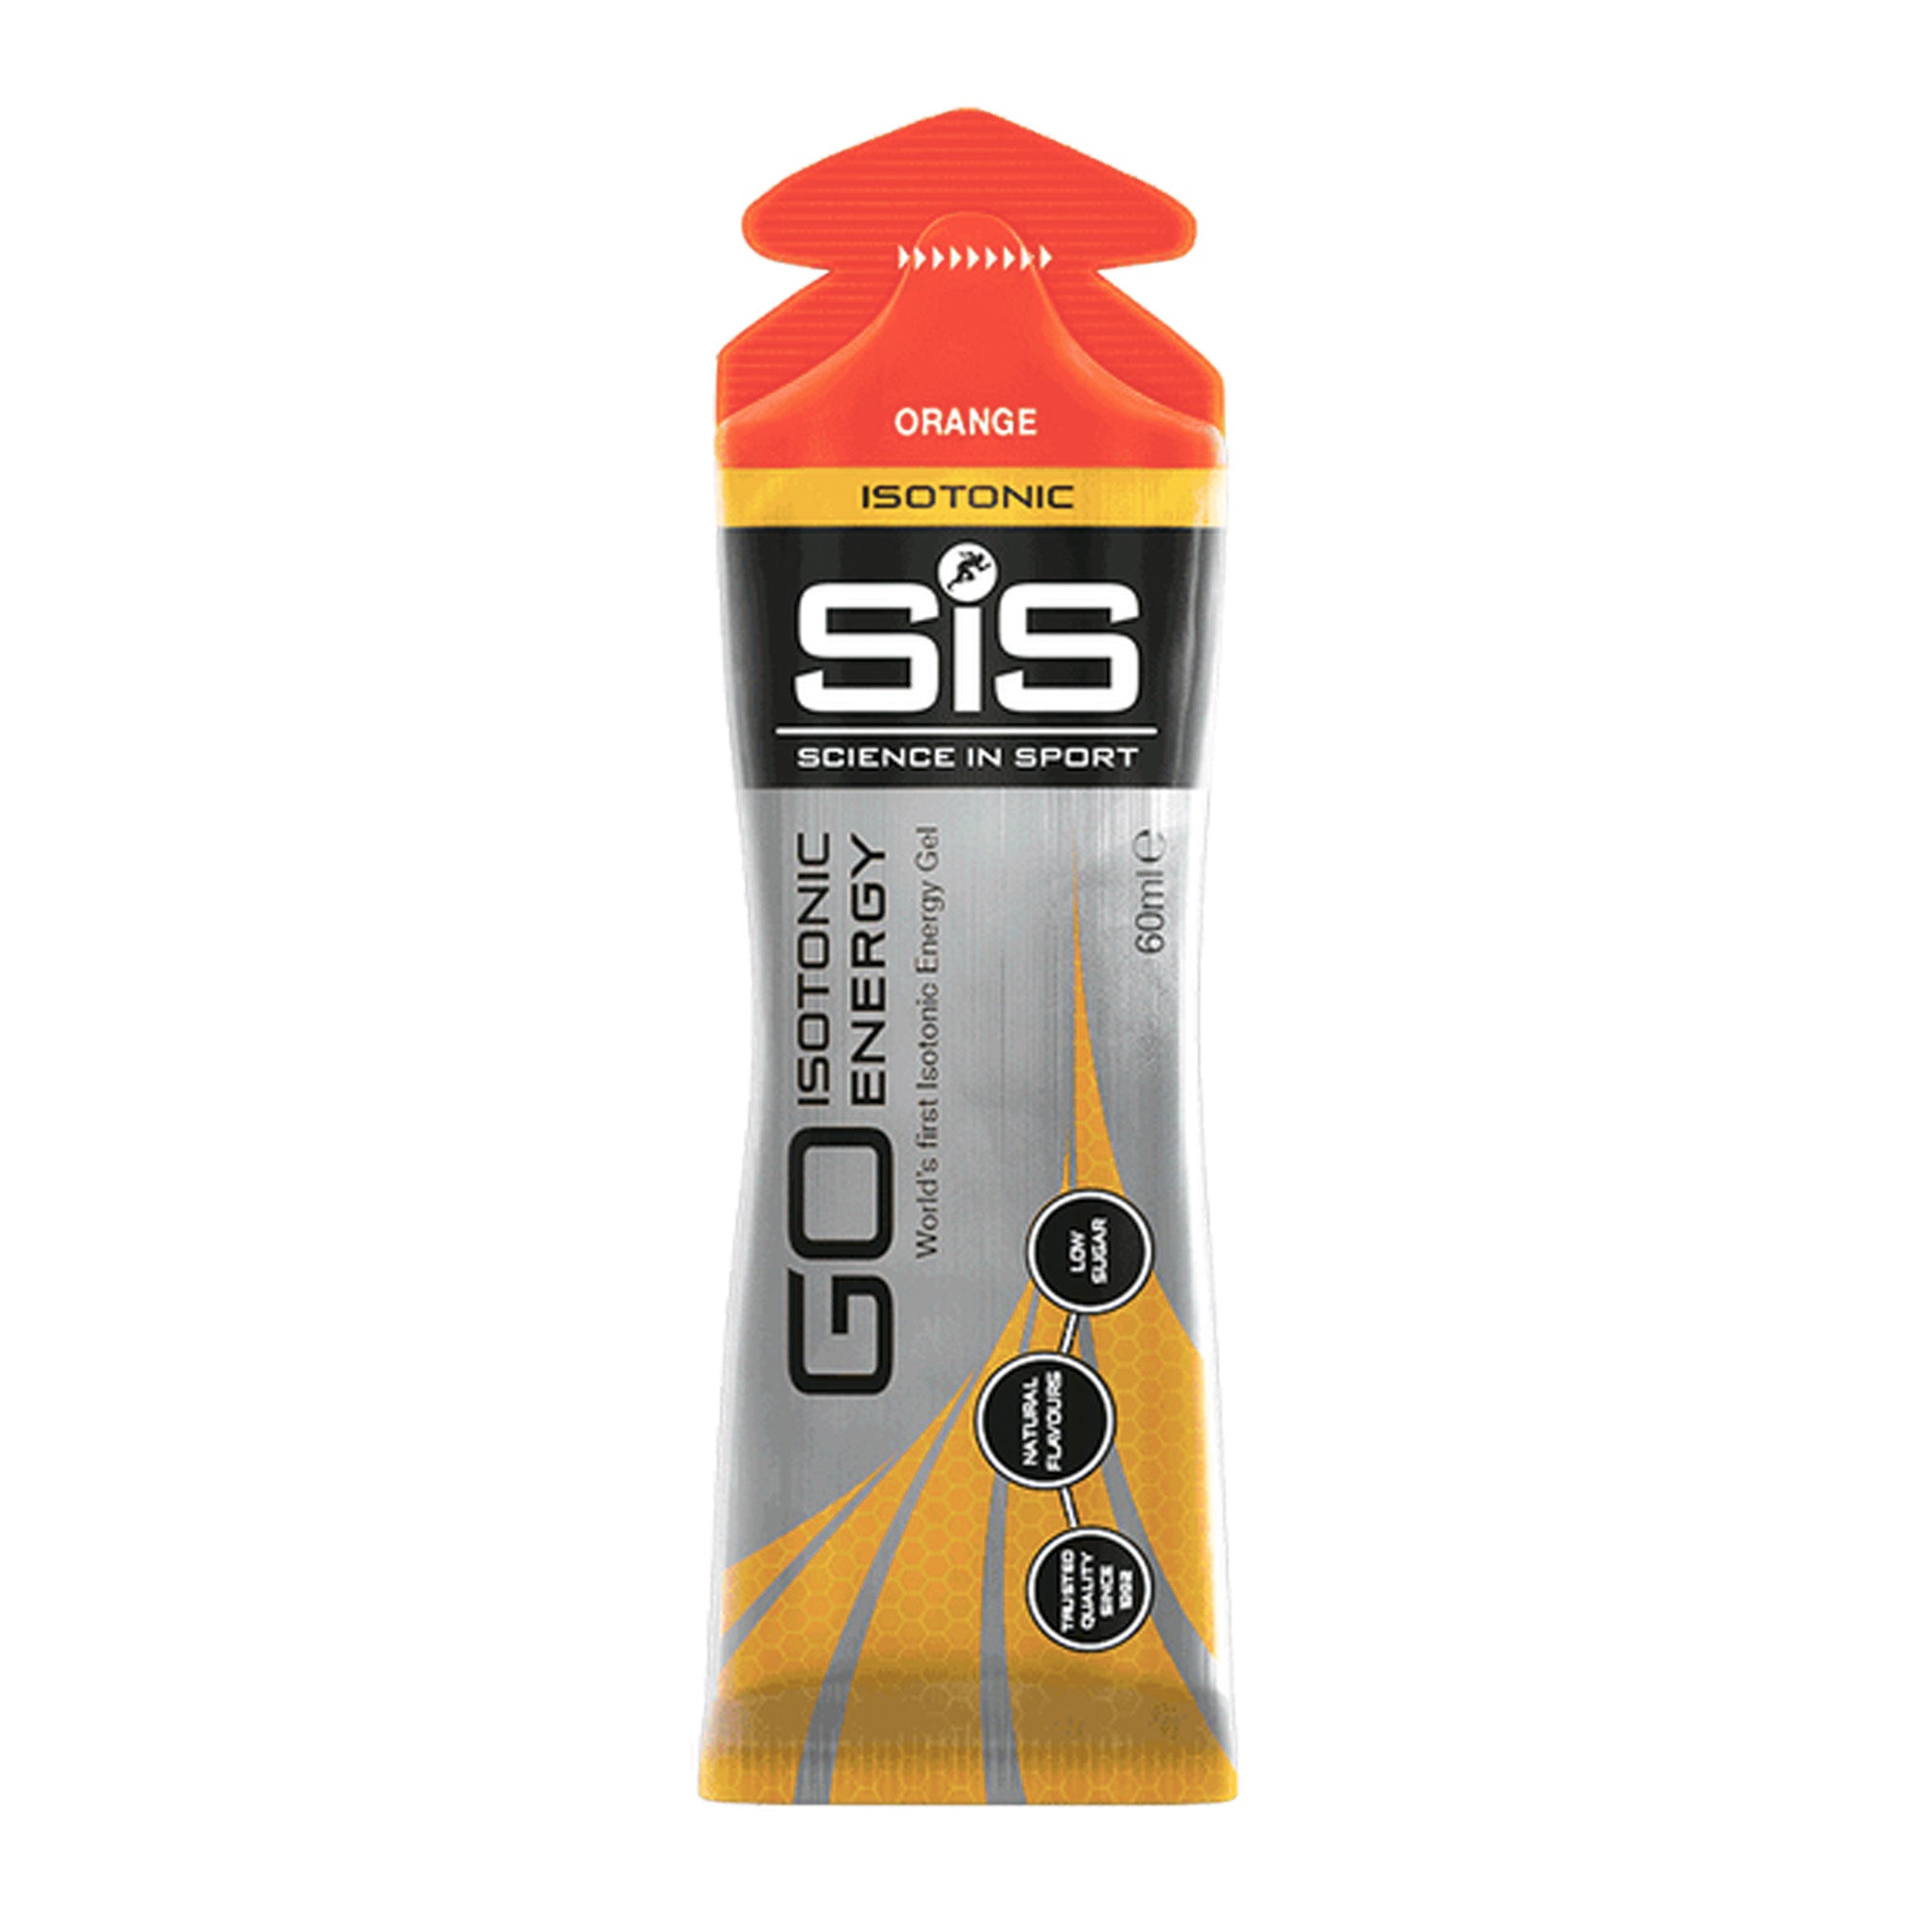 SIS orange energy gel